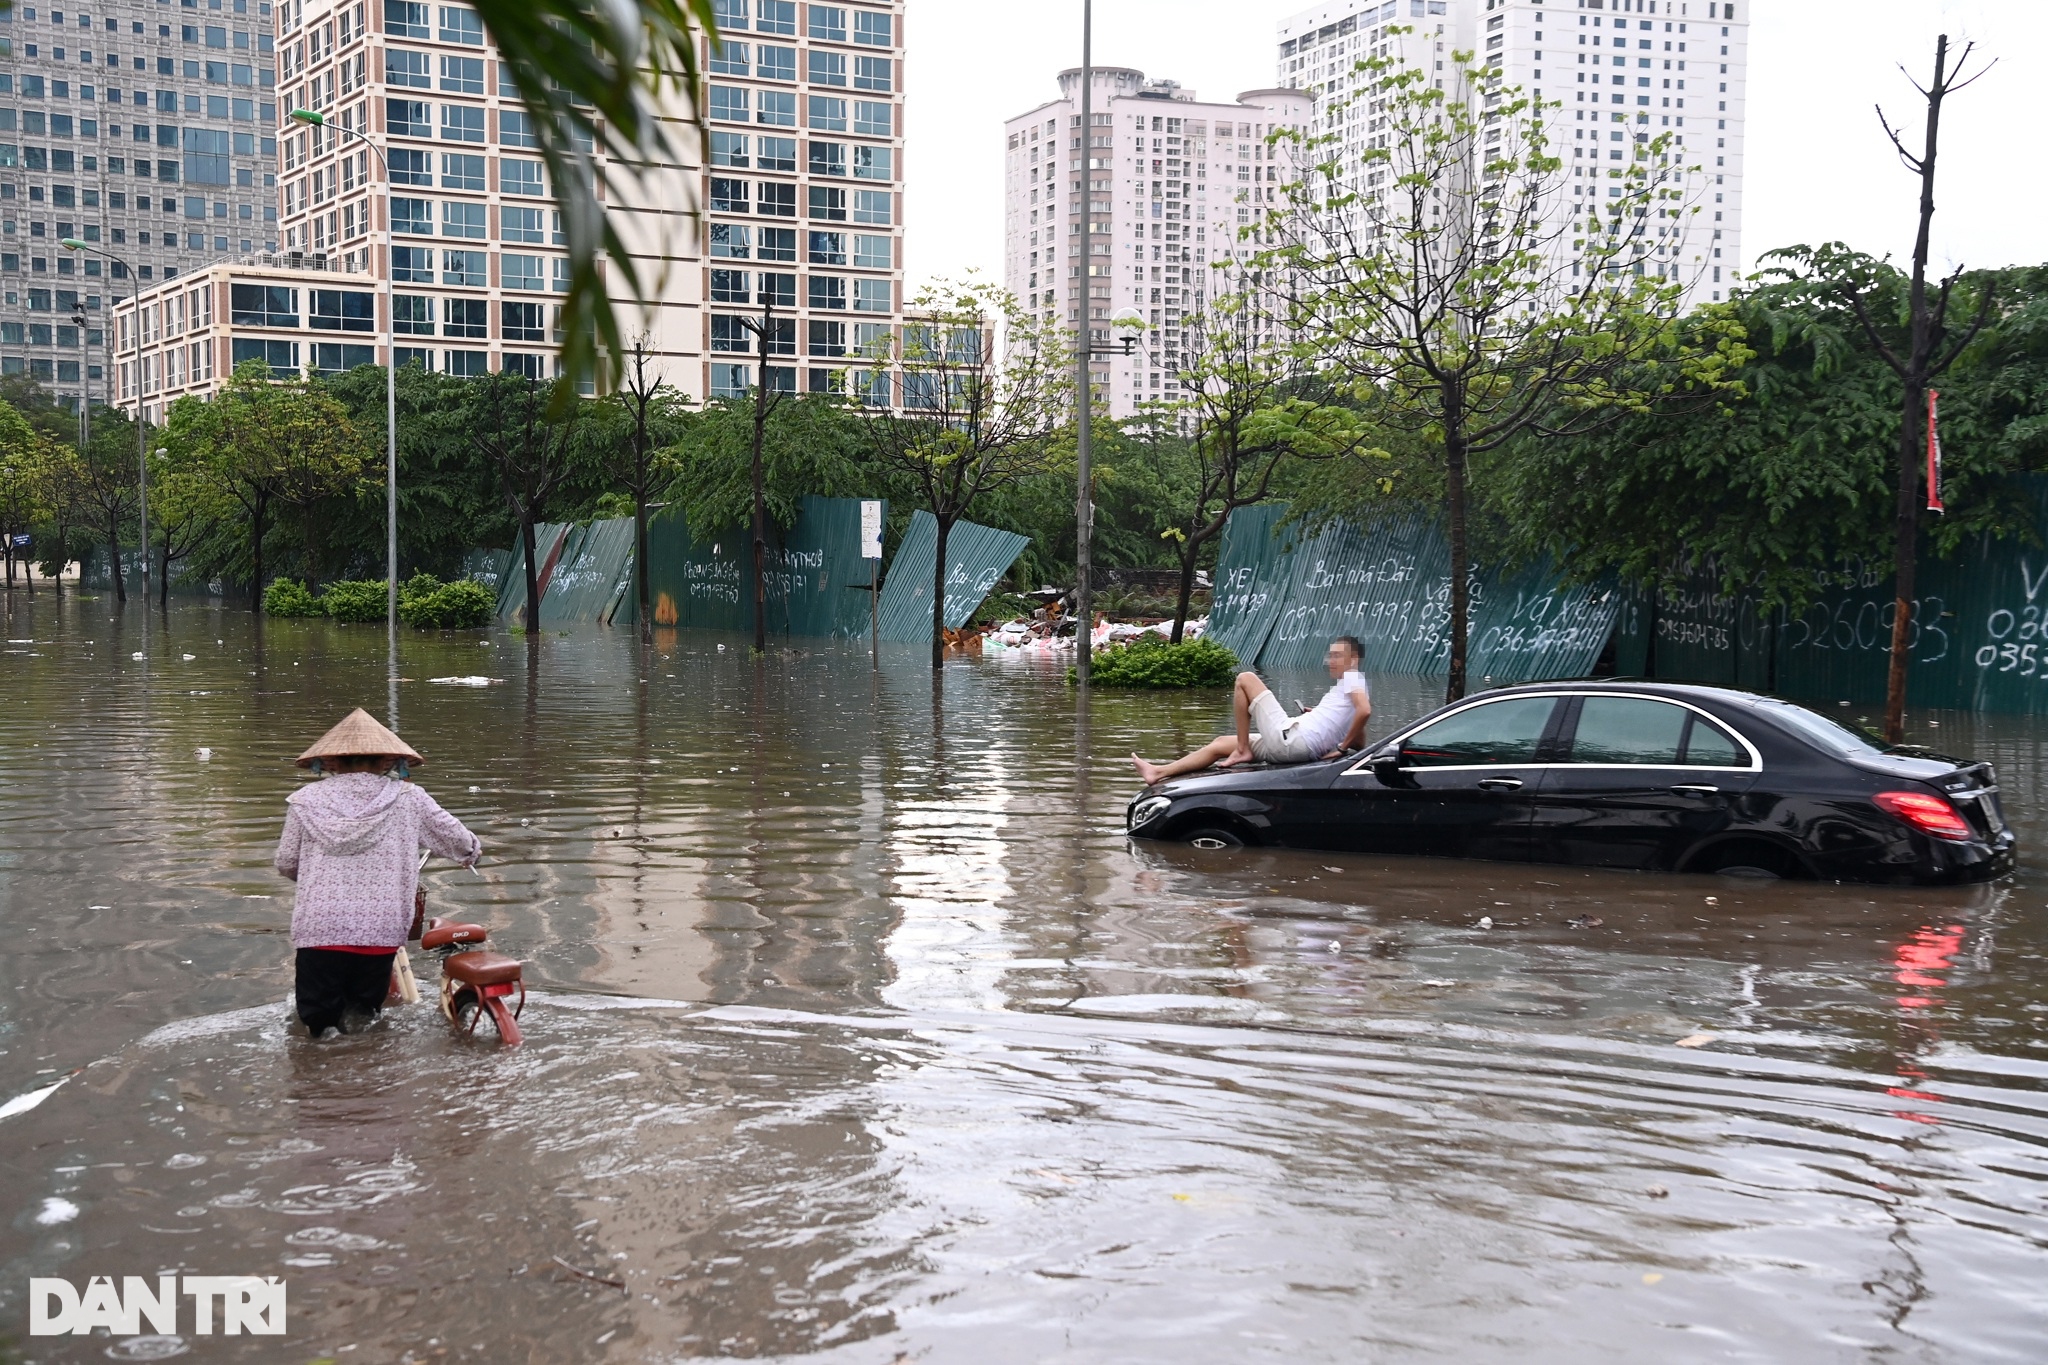 Cận cảnh nhiều xe sang mersedes ngập sâu trong nước sau mưa lớn ở Hà Nội - Ảnh 6.